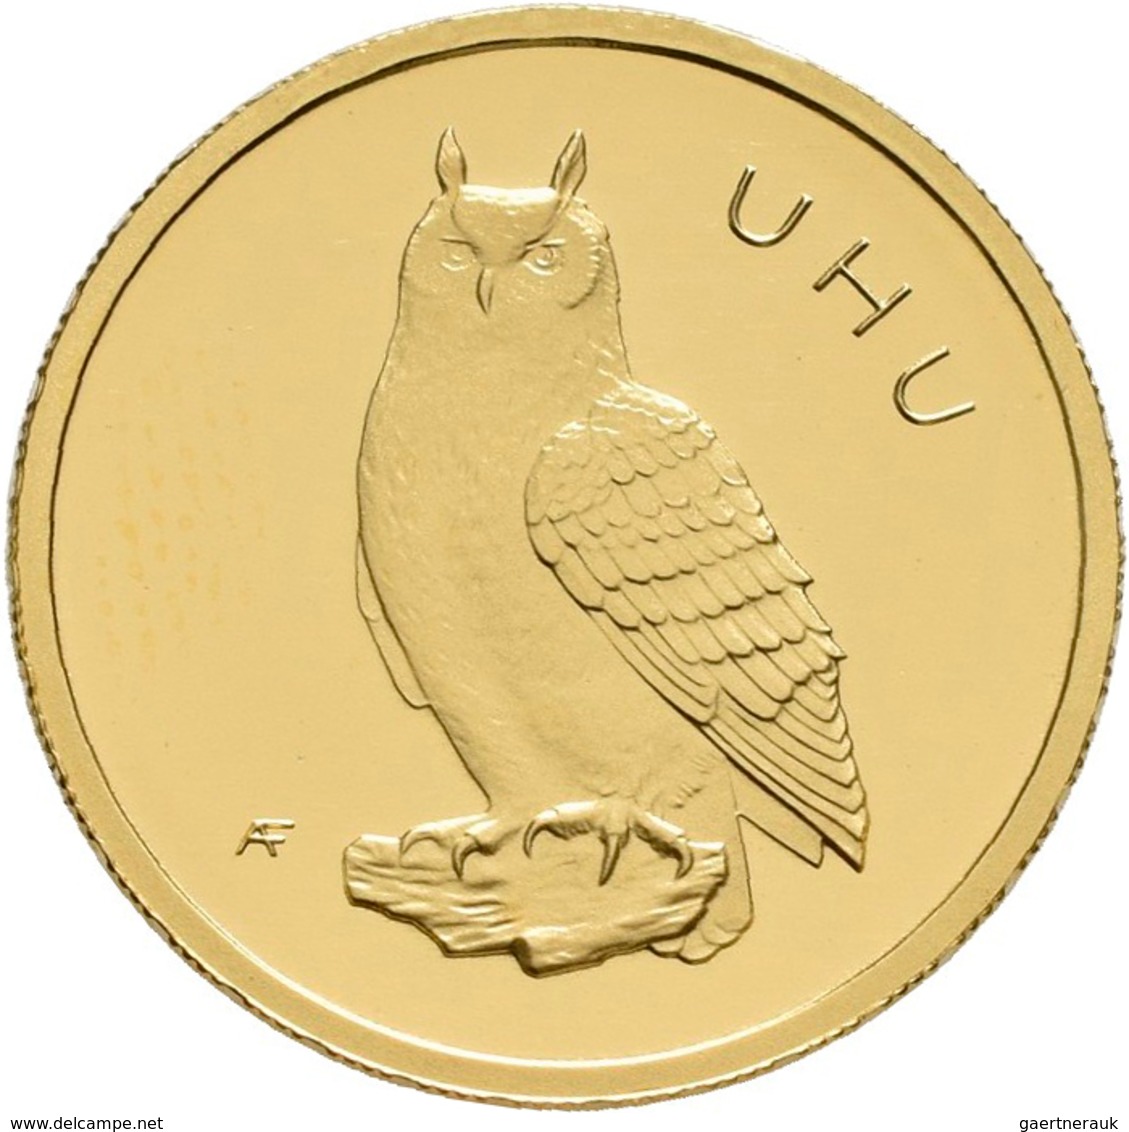 Deutschland - Anlagegold: 4 X 20 Euro 2018 Uhu (A,F,G,J), Serie Heimische Vögel. In Original Kapsel, - Deutschland